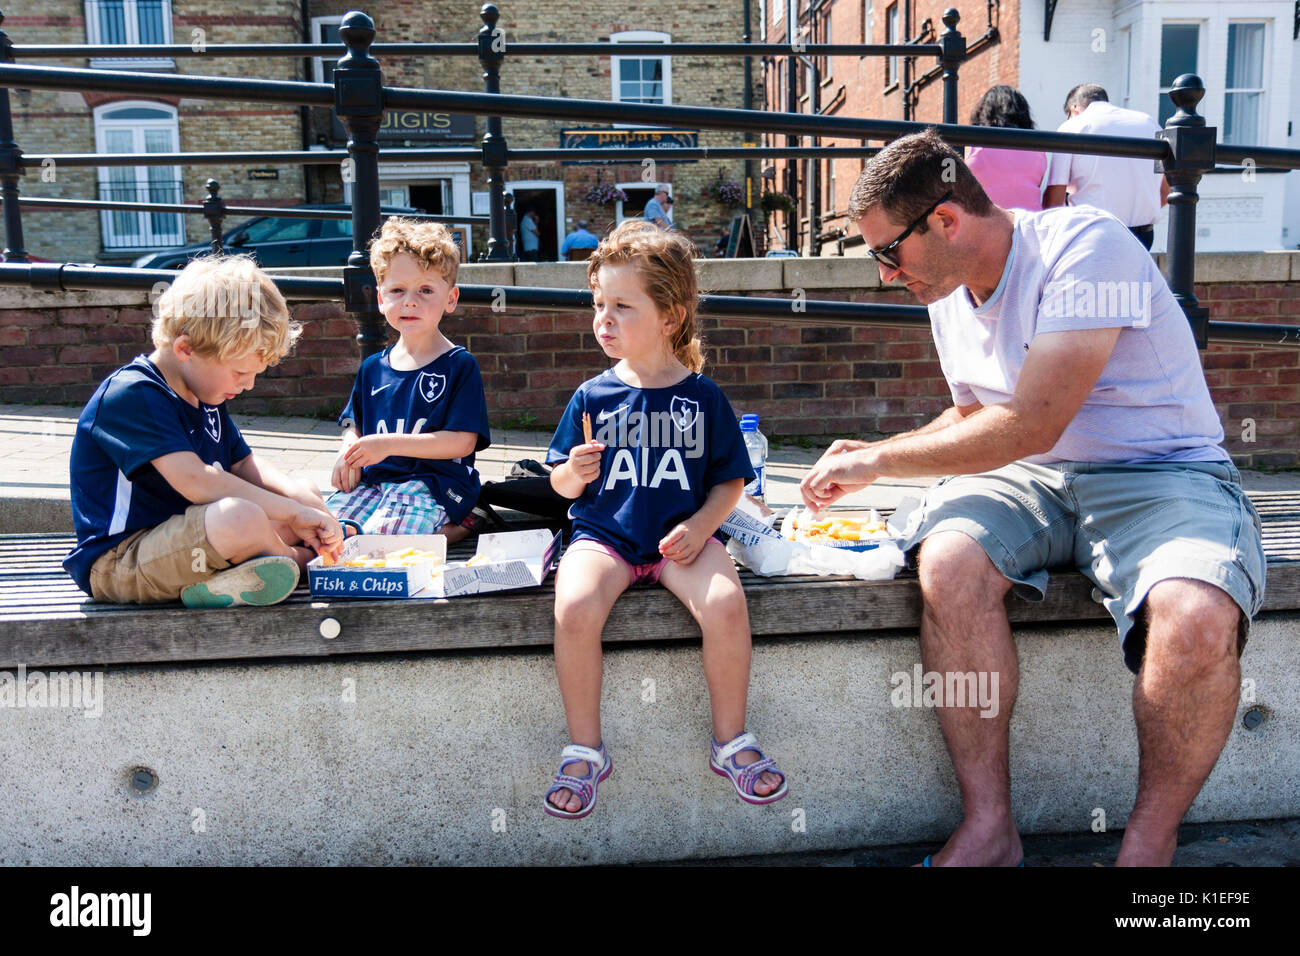 Inghilterra, sandwich. Tre giovani bambini 5-6 anni, con il loro padre, seduto sulla parete condividendo una scatola di pesce e patatine in estate sole brillante. Foto Stock